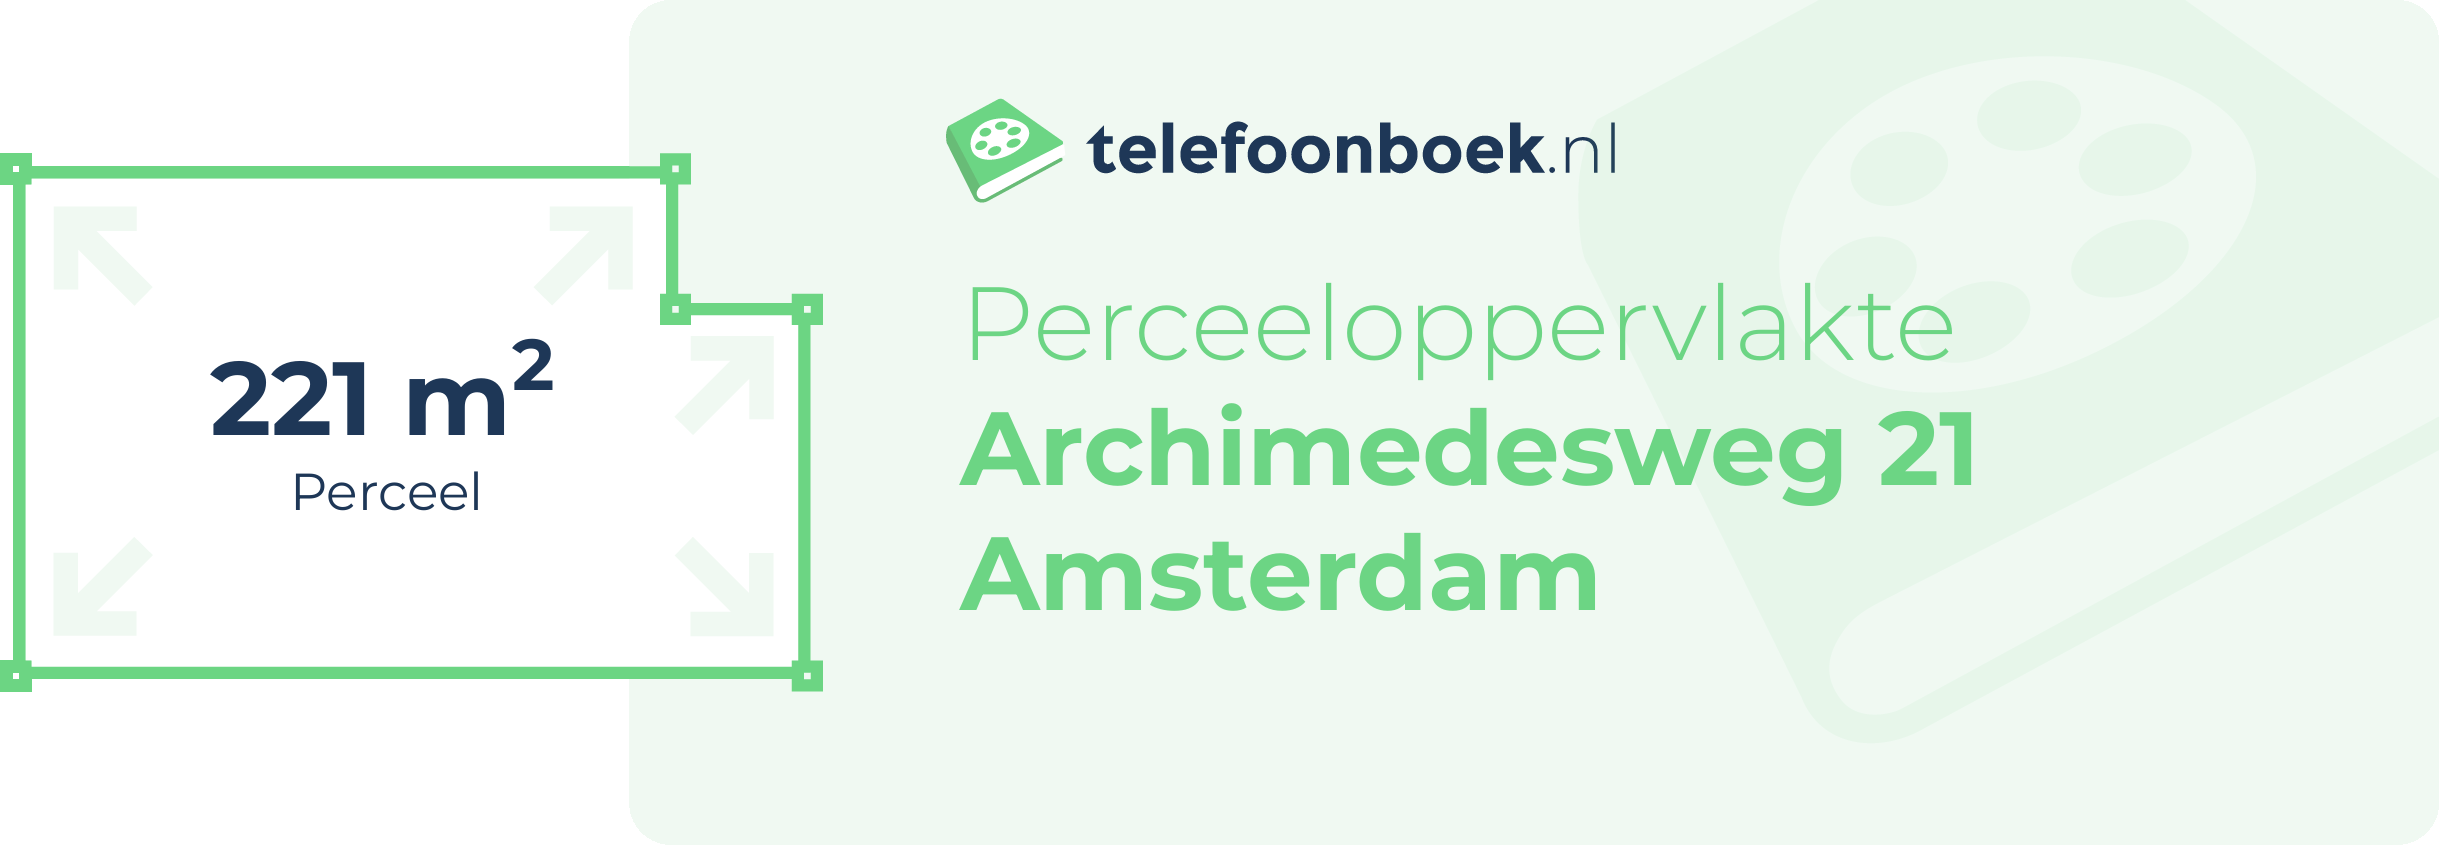 Perceeloppervlakte Archimedesweg 21 Amsterdam